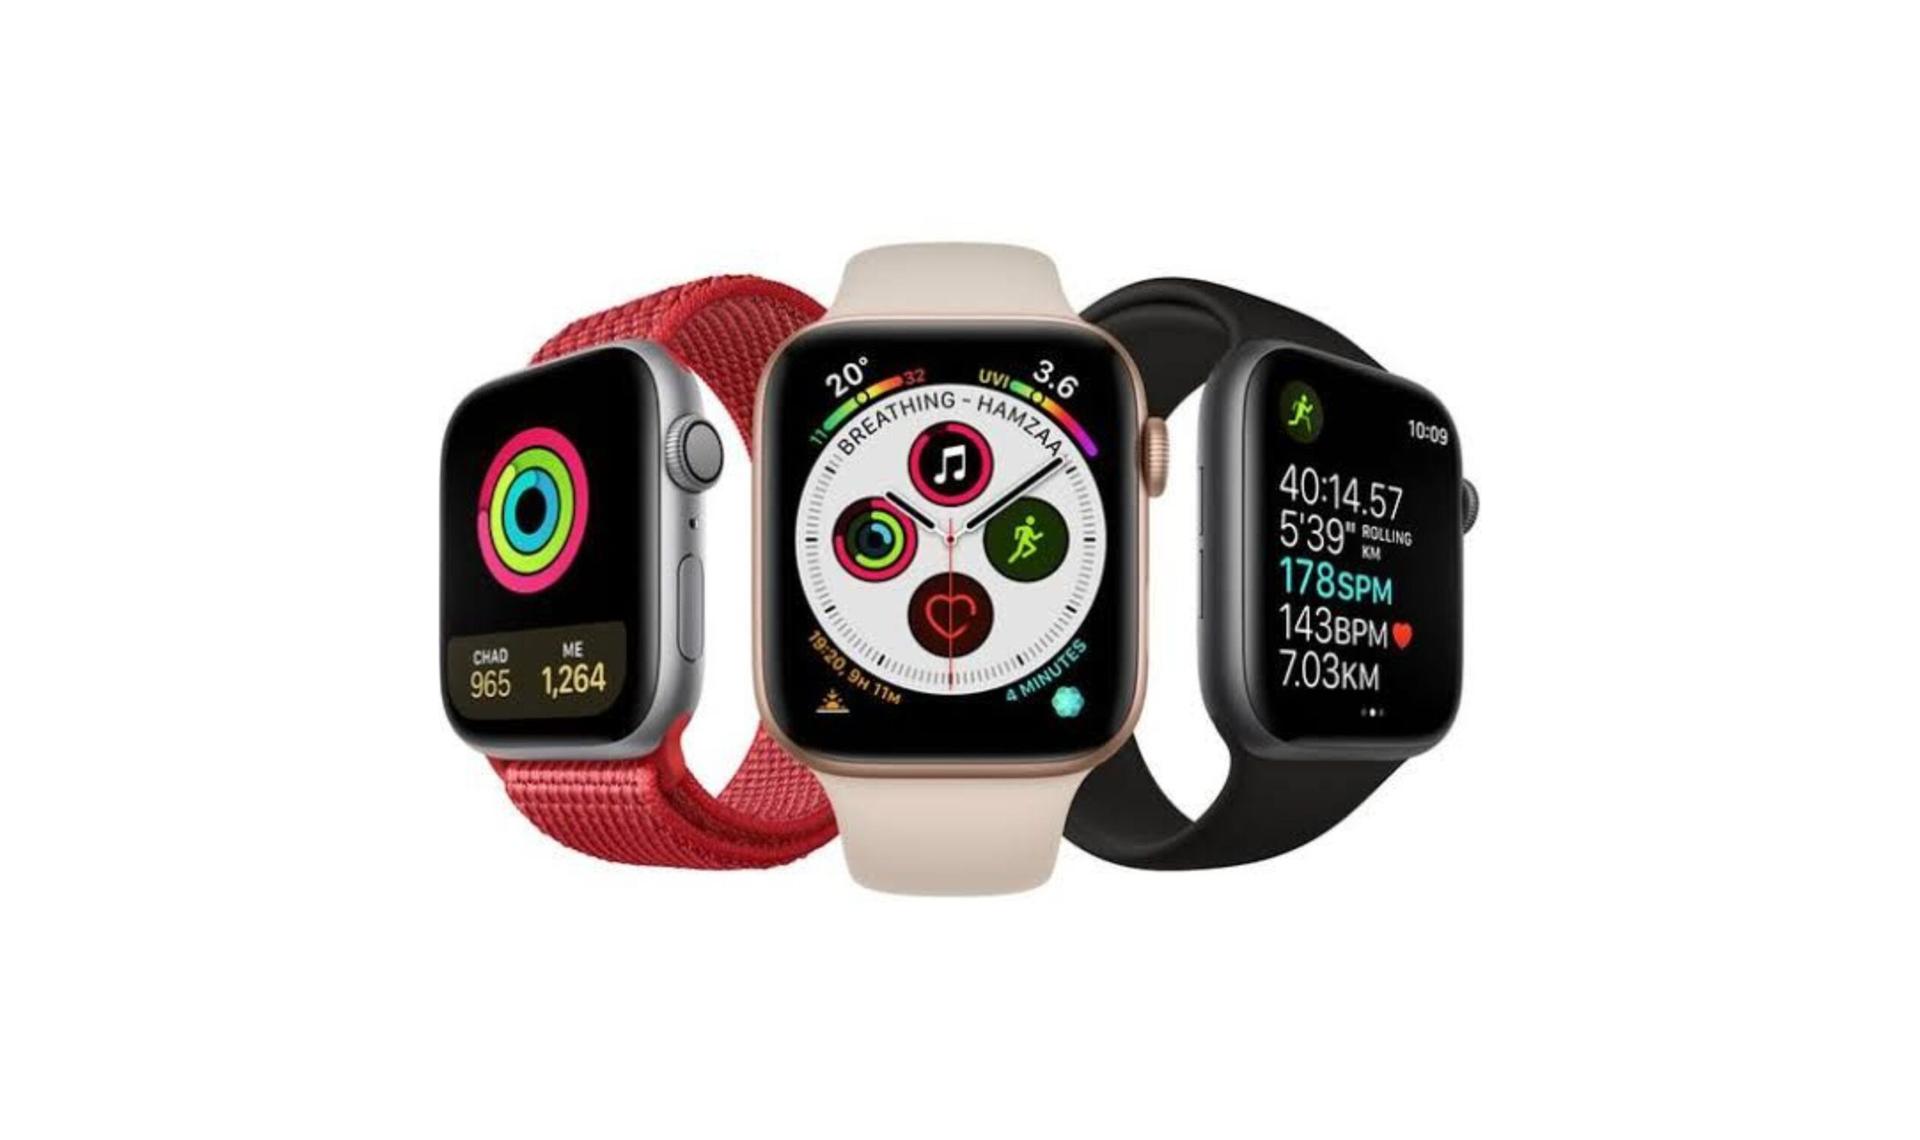 Картинки для часов apple iwatch